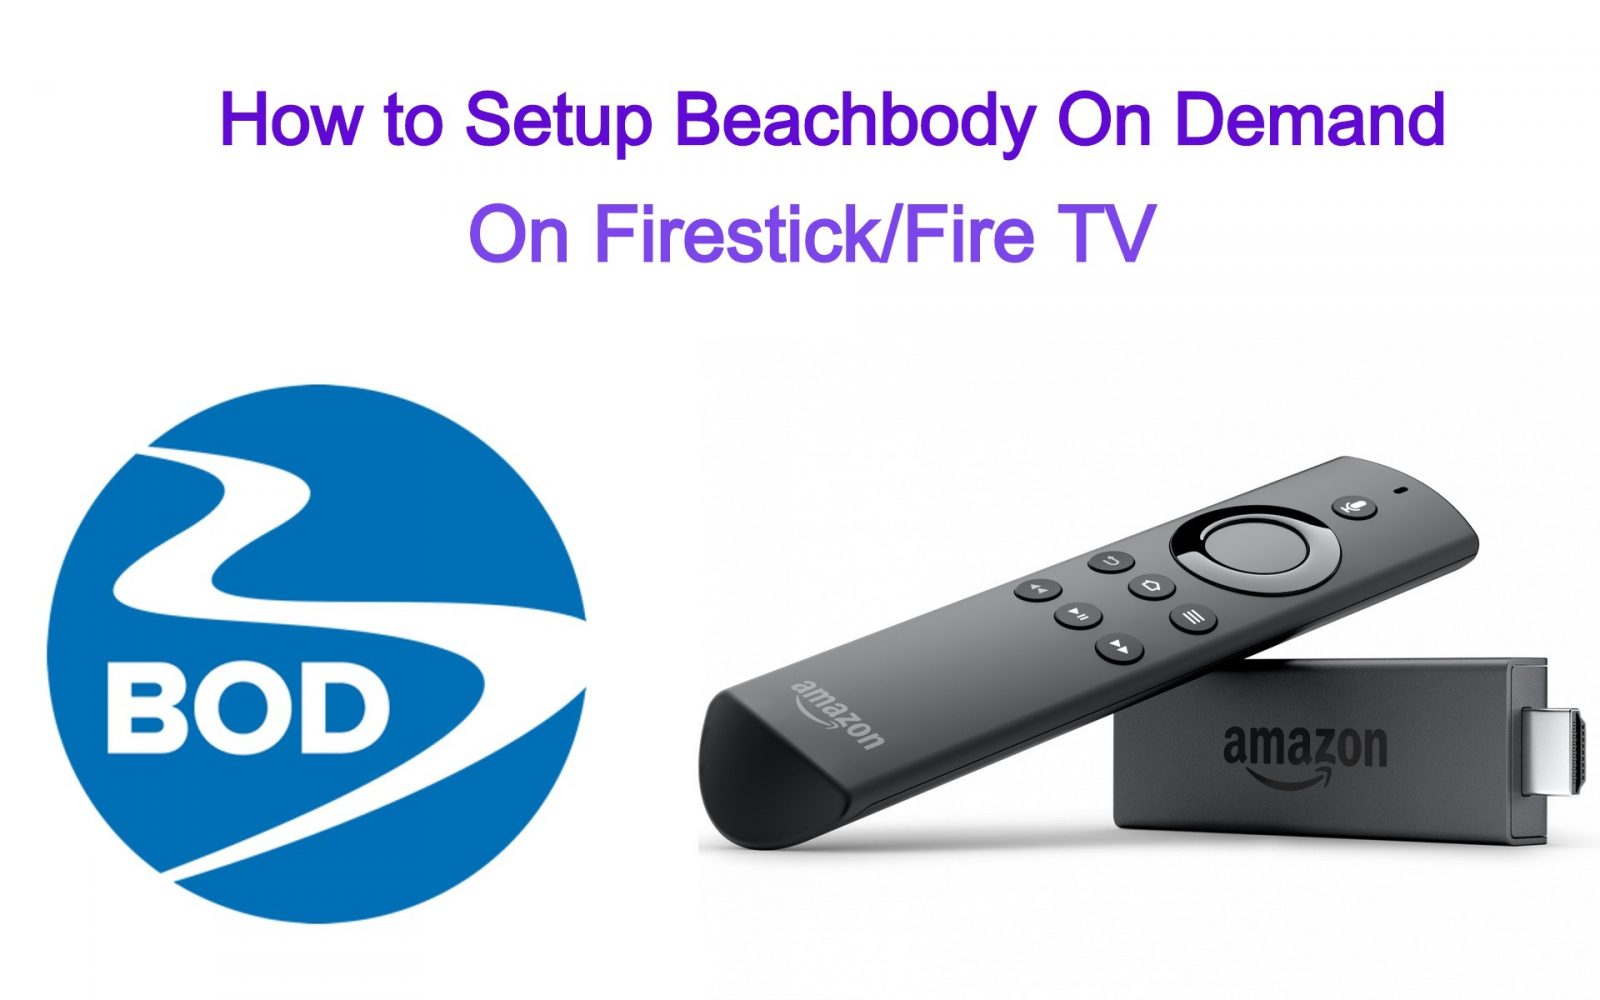 How To Setup Beachbody On Demand Bod On Firestick Fire Tv 2020